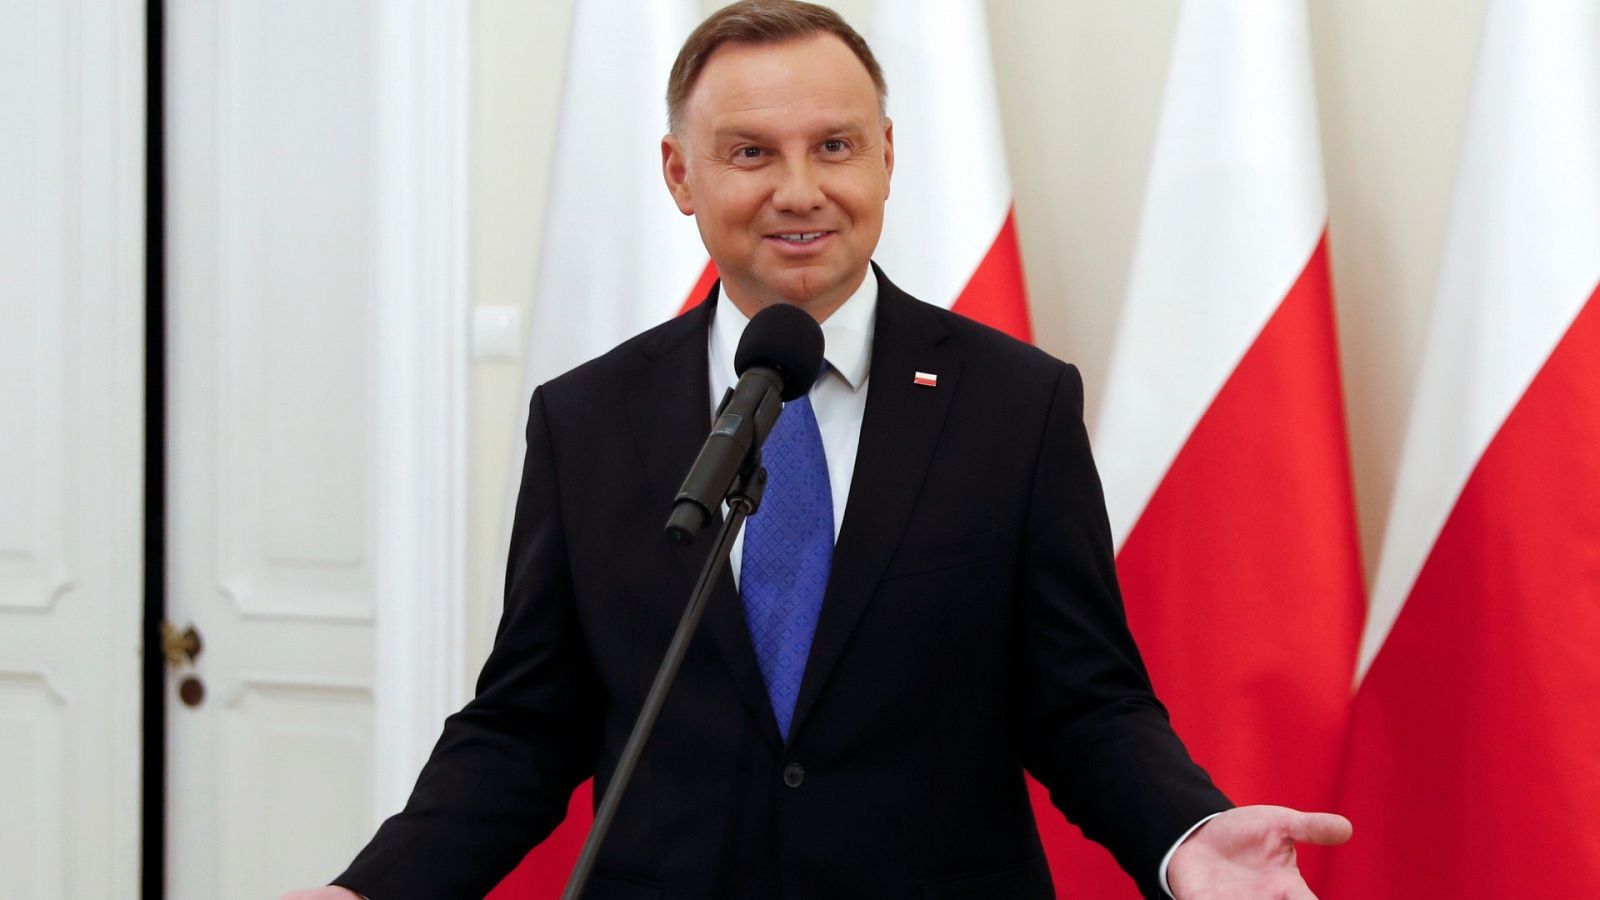 El ultraconservador Duda gana las presidenciales polacas con 51,2 % de los votos